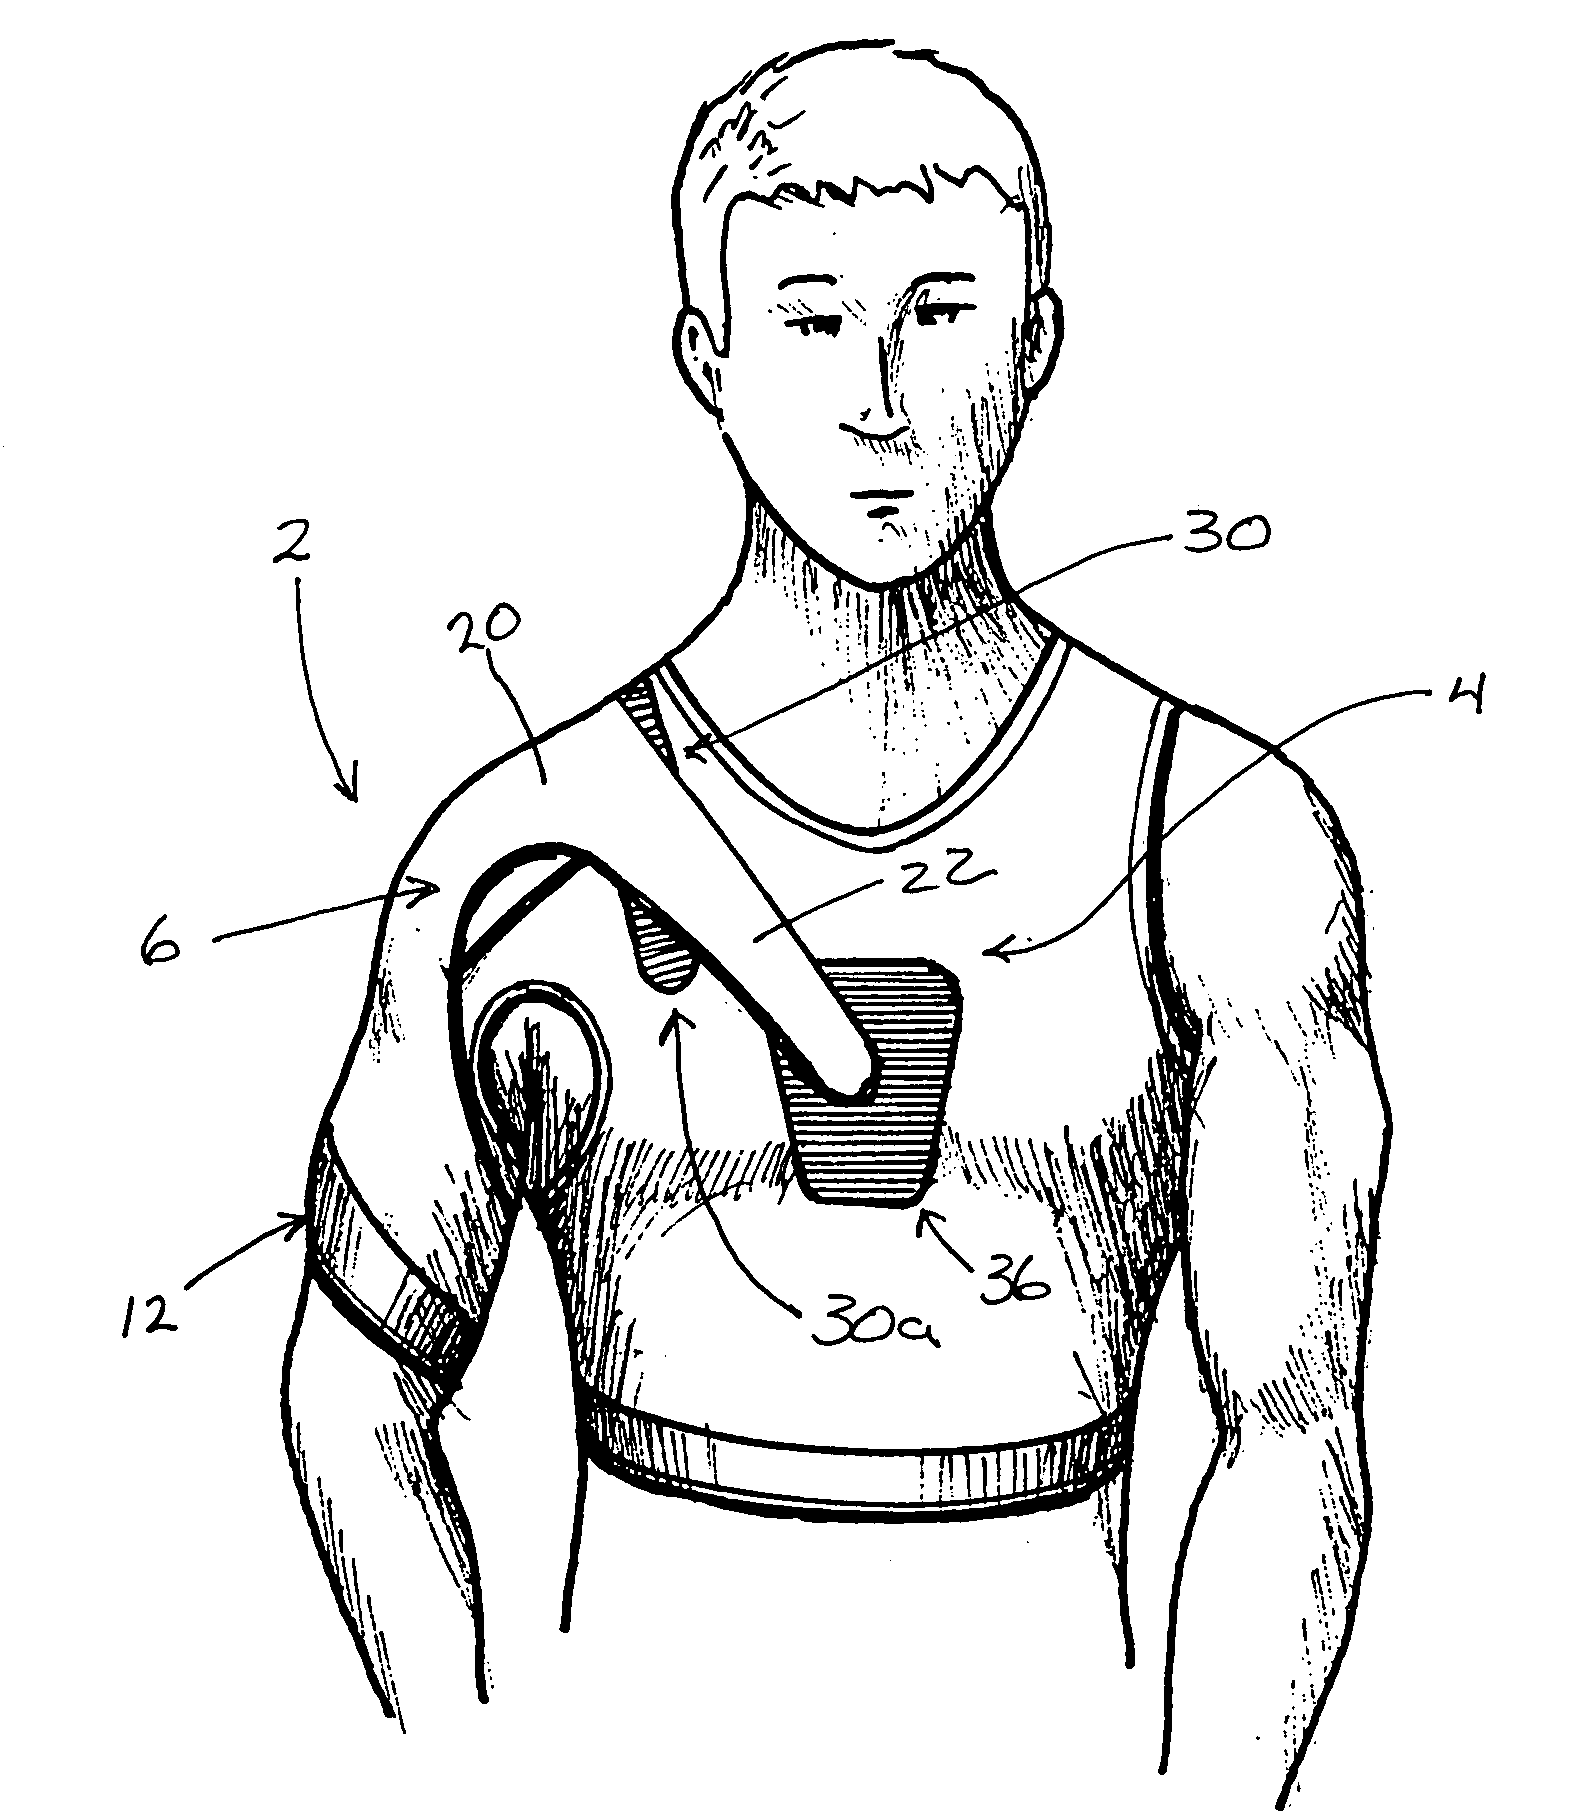 Shoulder brace traction system